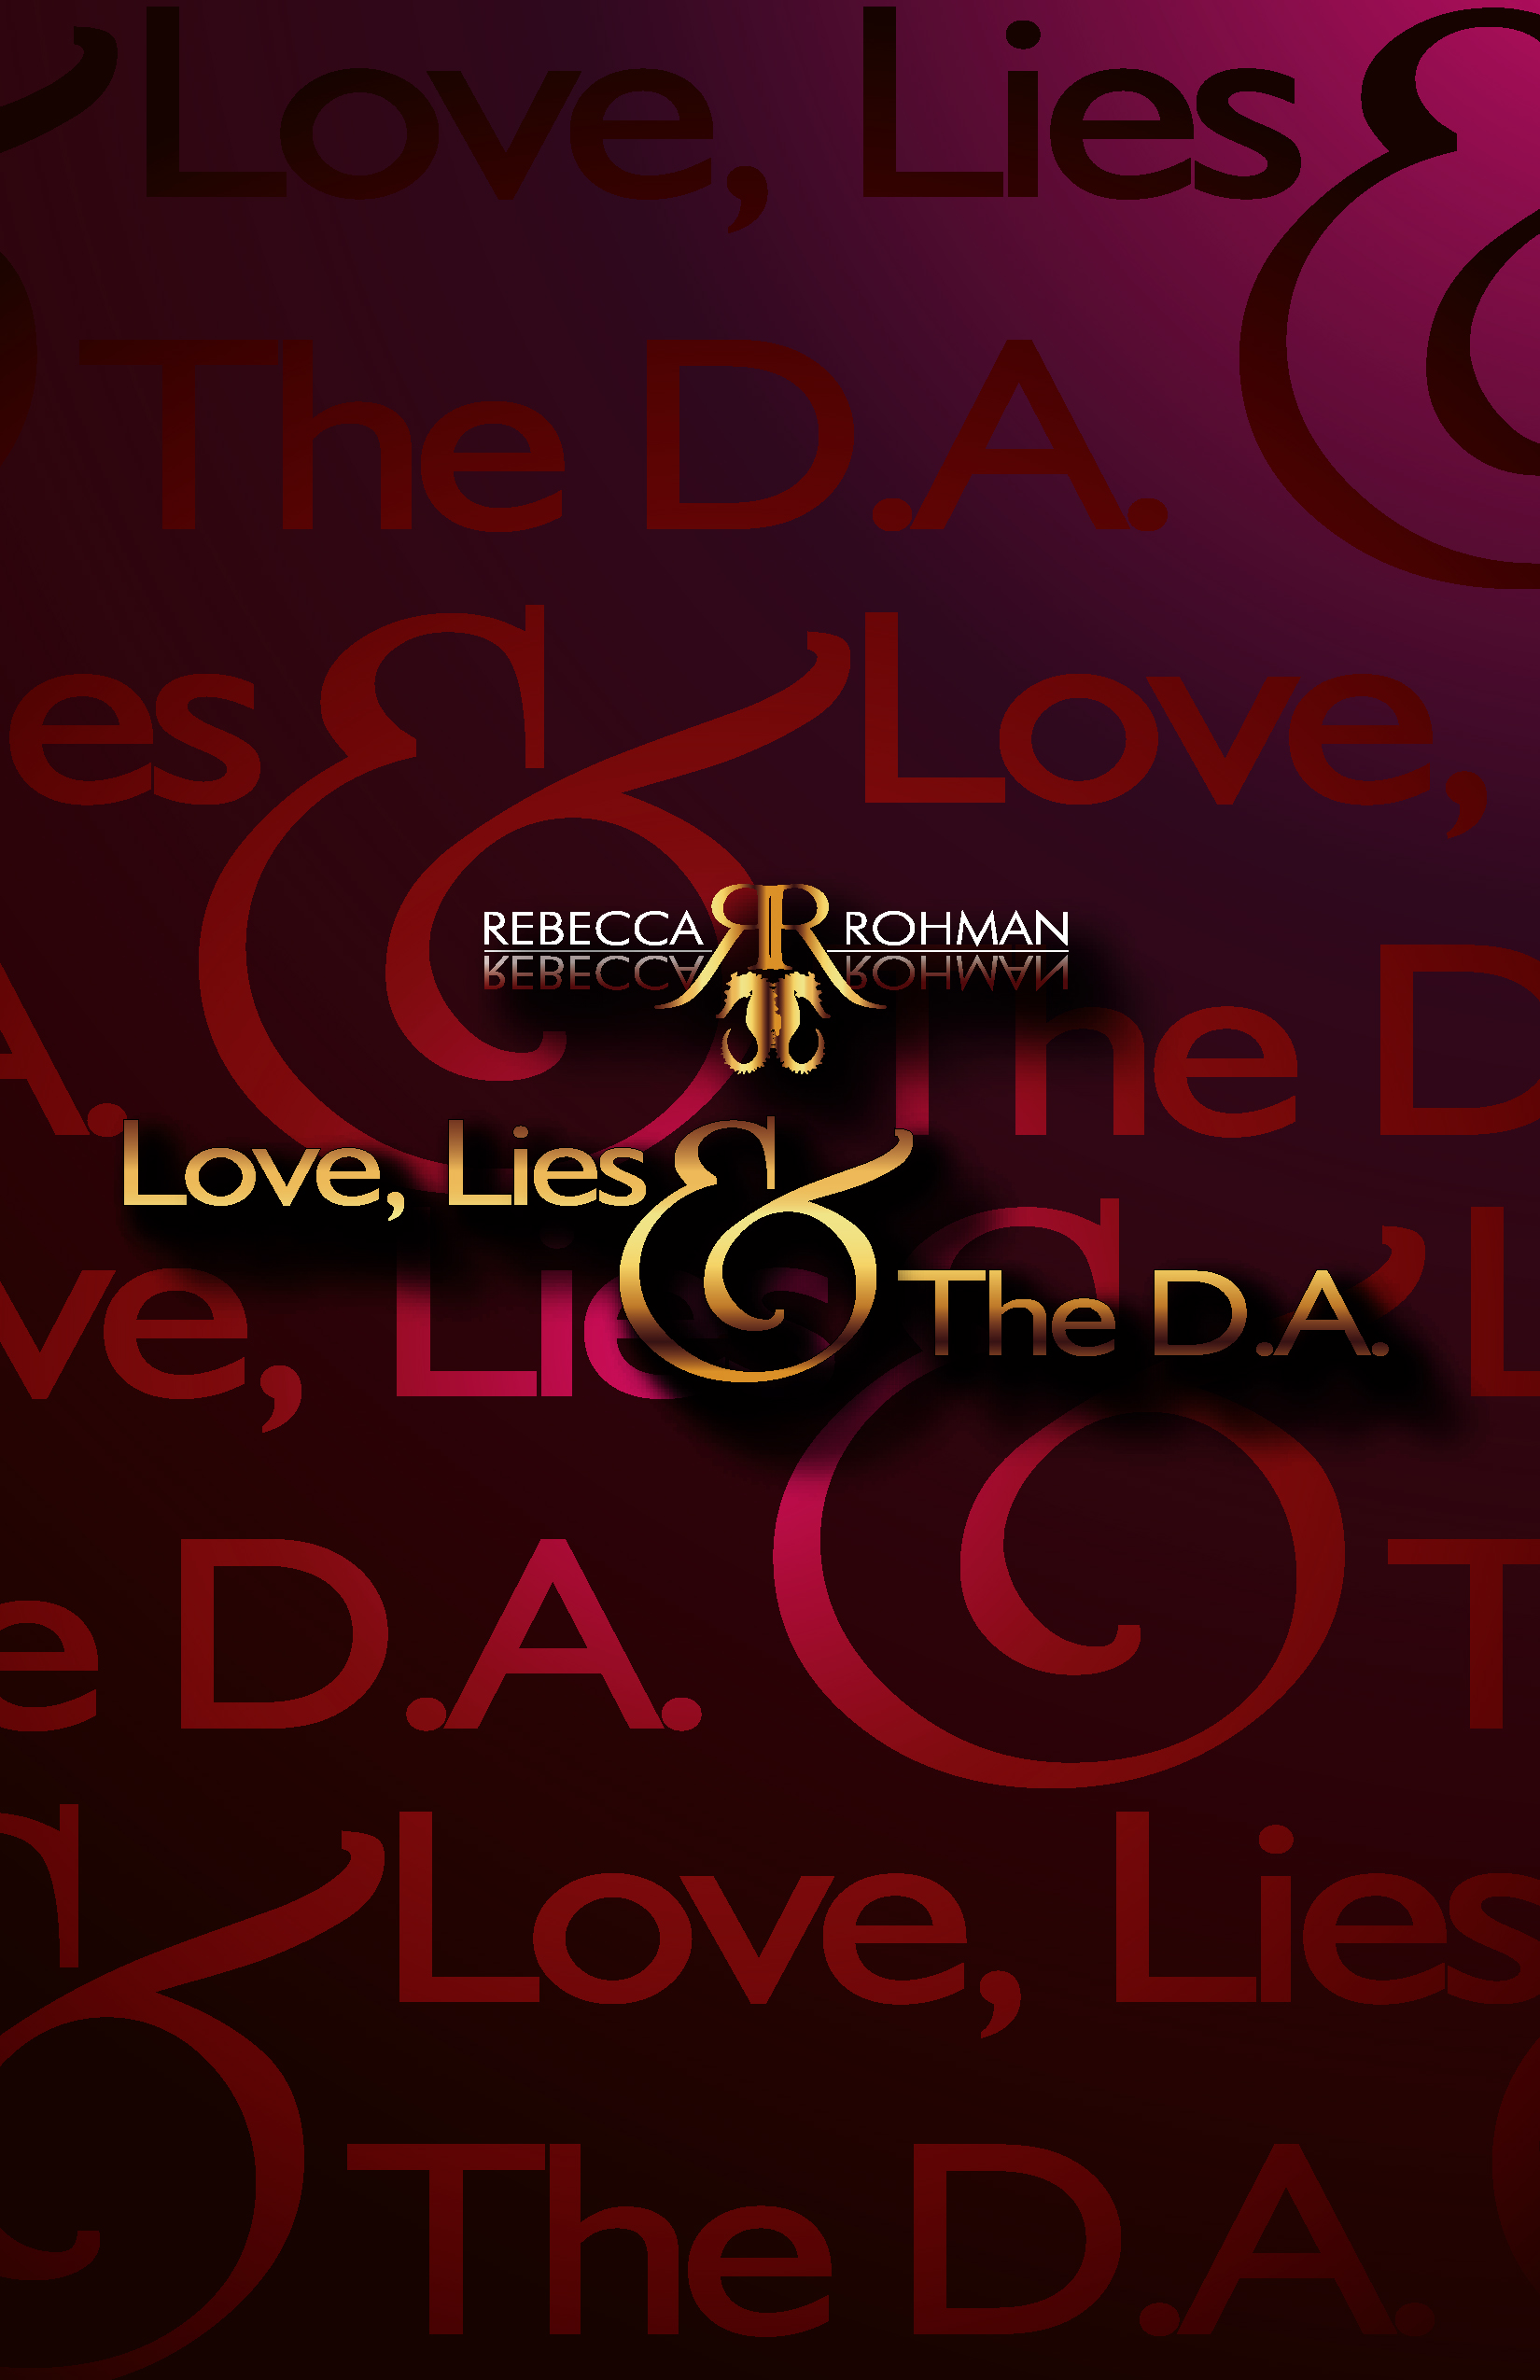 Love, Lies & The DA. Autographed Paperback - ORIGINAL COVER